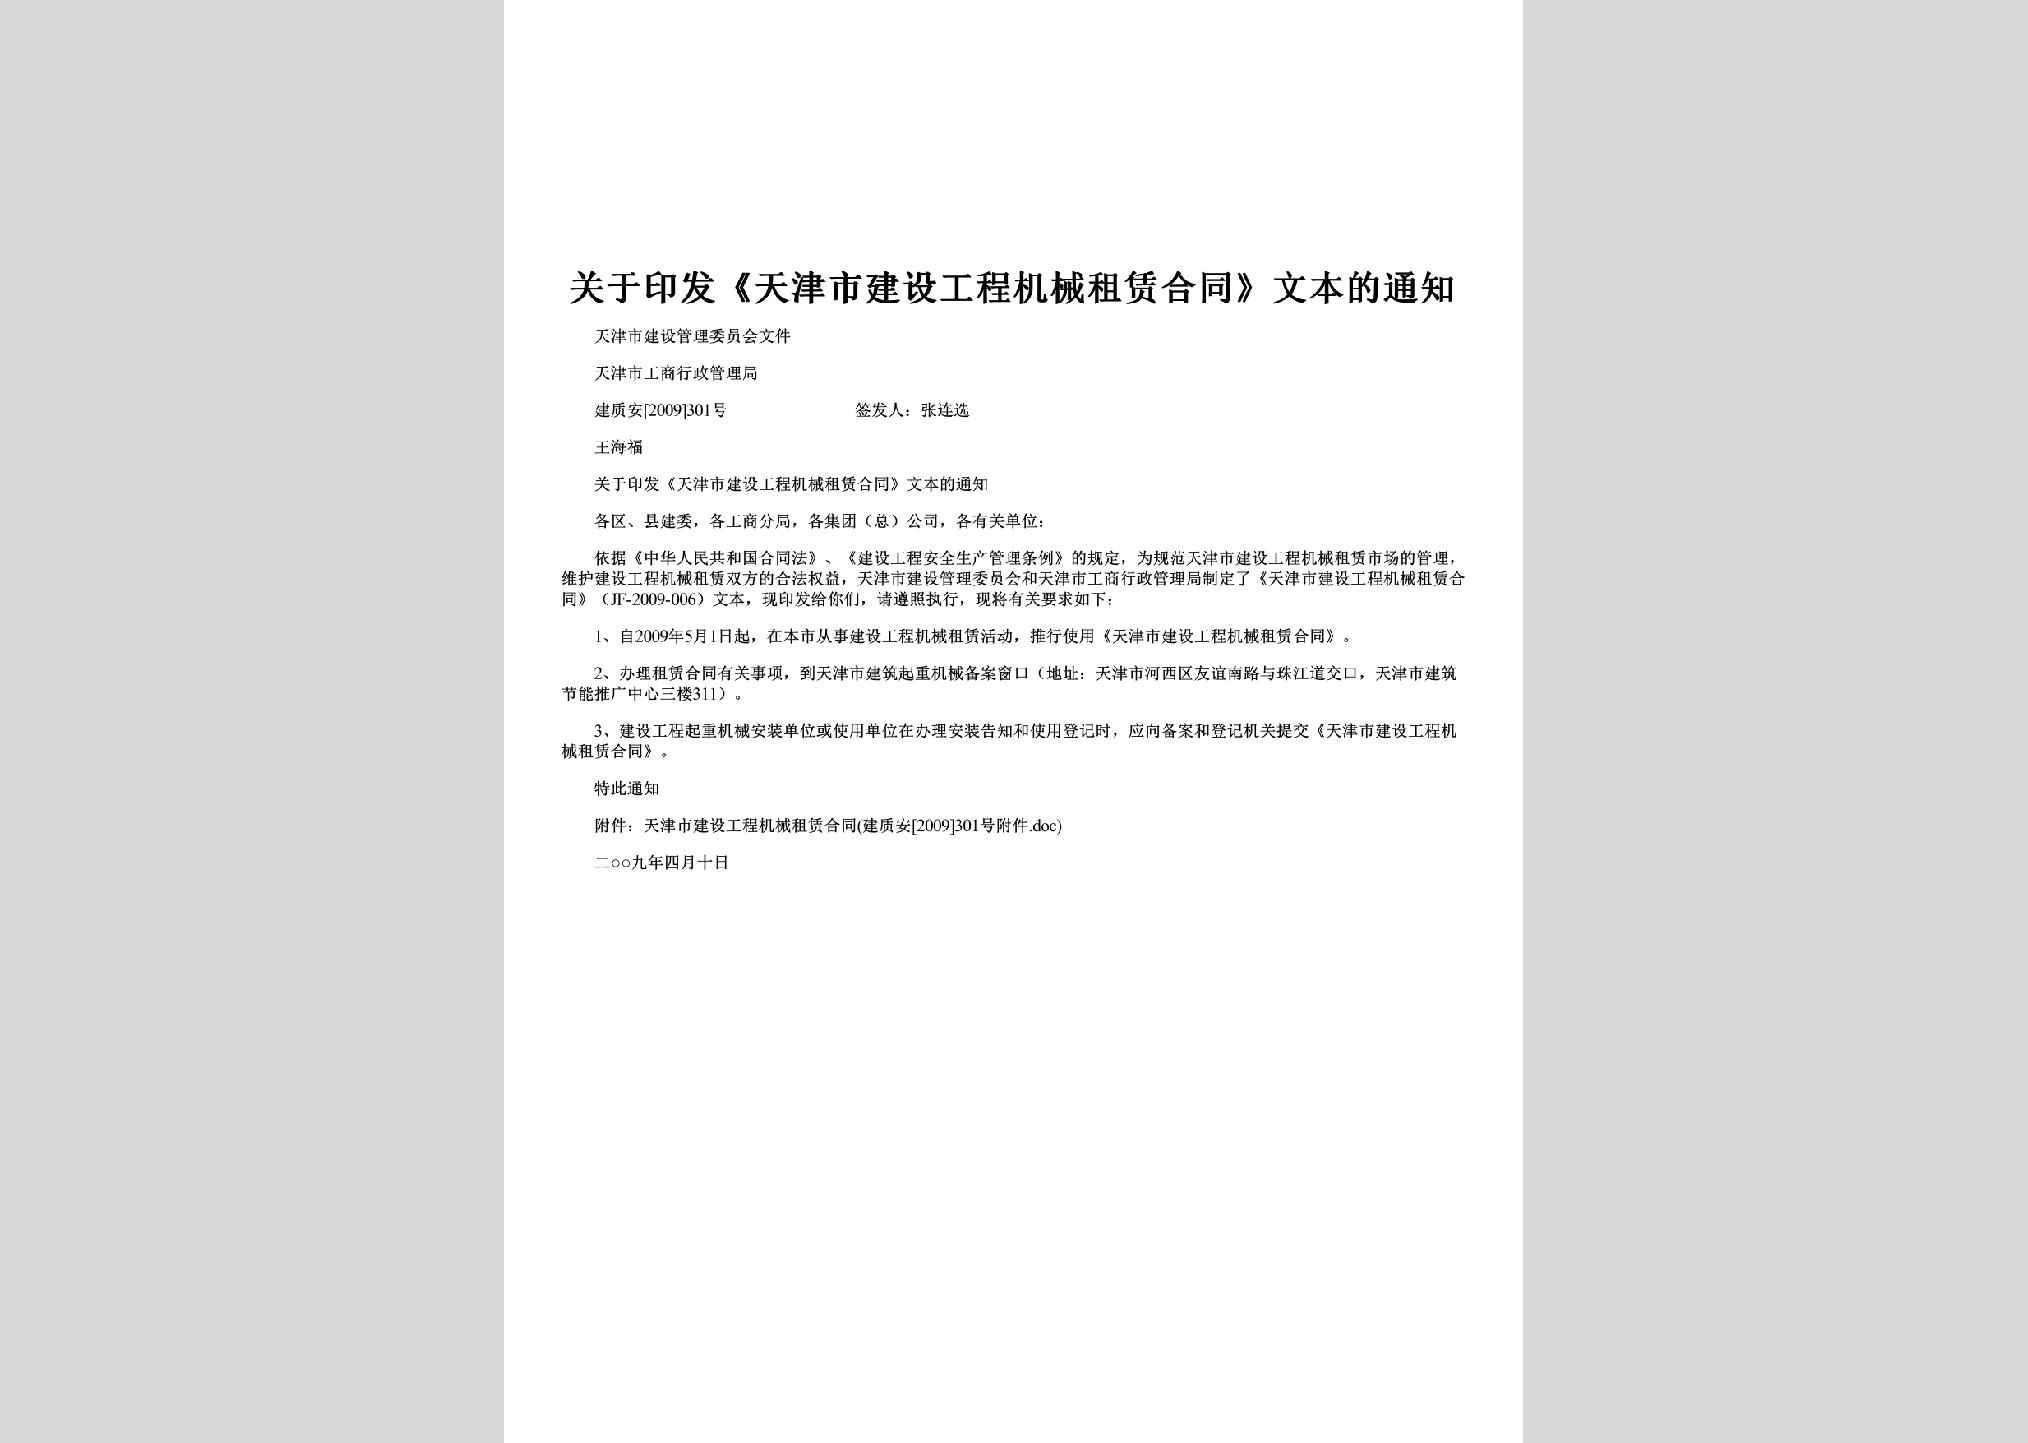 建质安[2009]301号：关于印发《天津市建设工程机械租赁合同》文本的通知